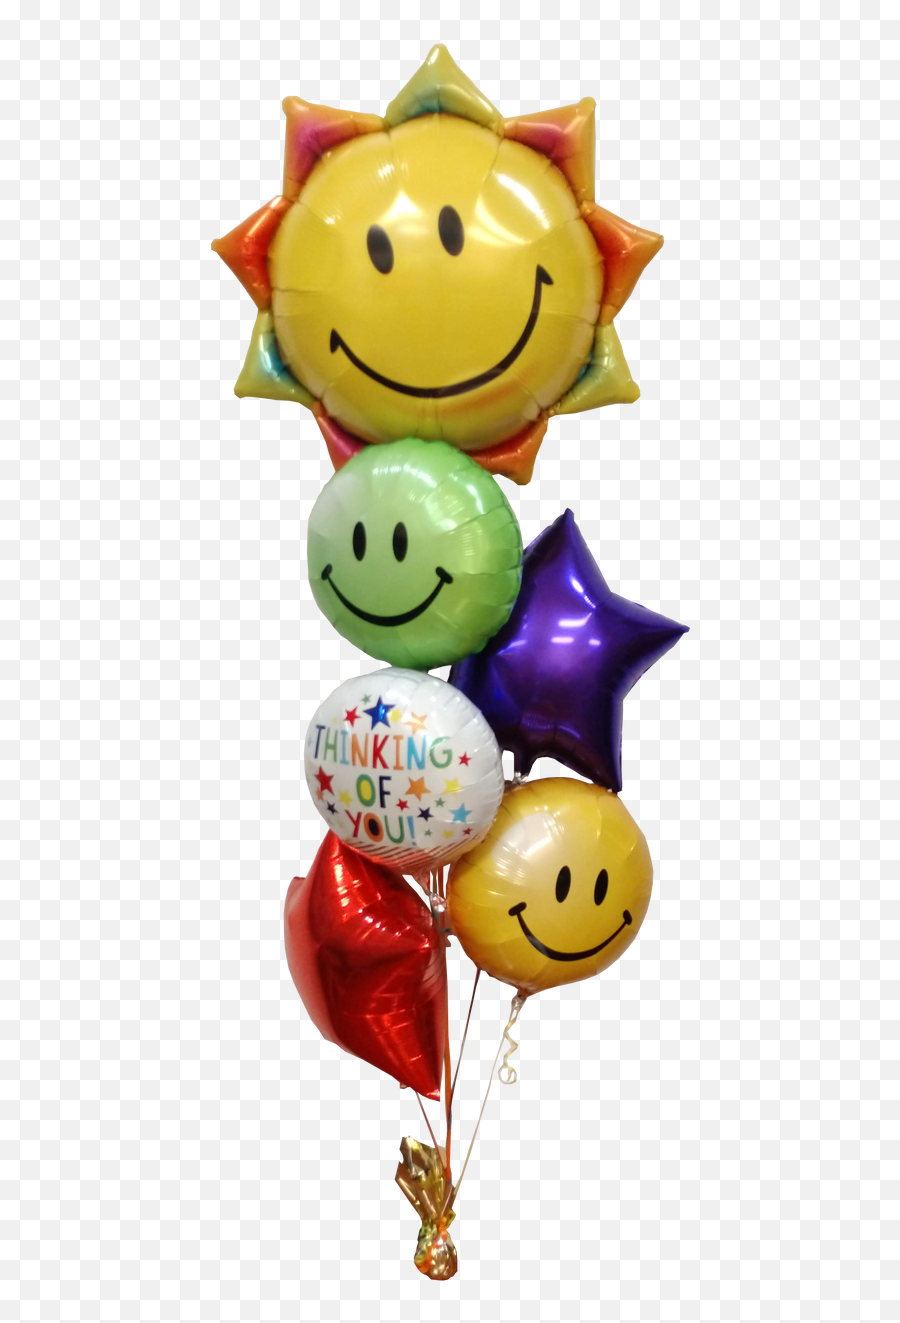 Sunshine And Thinking Of You Wishes Bouquet - Balloon Emoji,Sunshine Emoticon